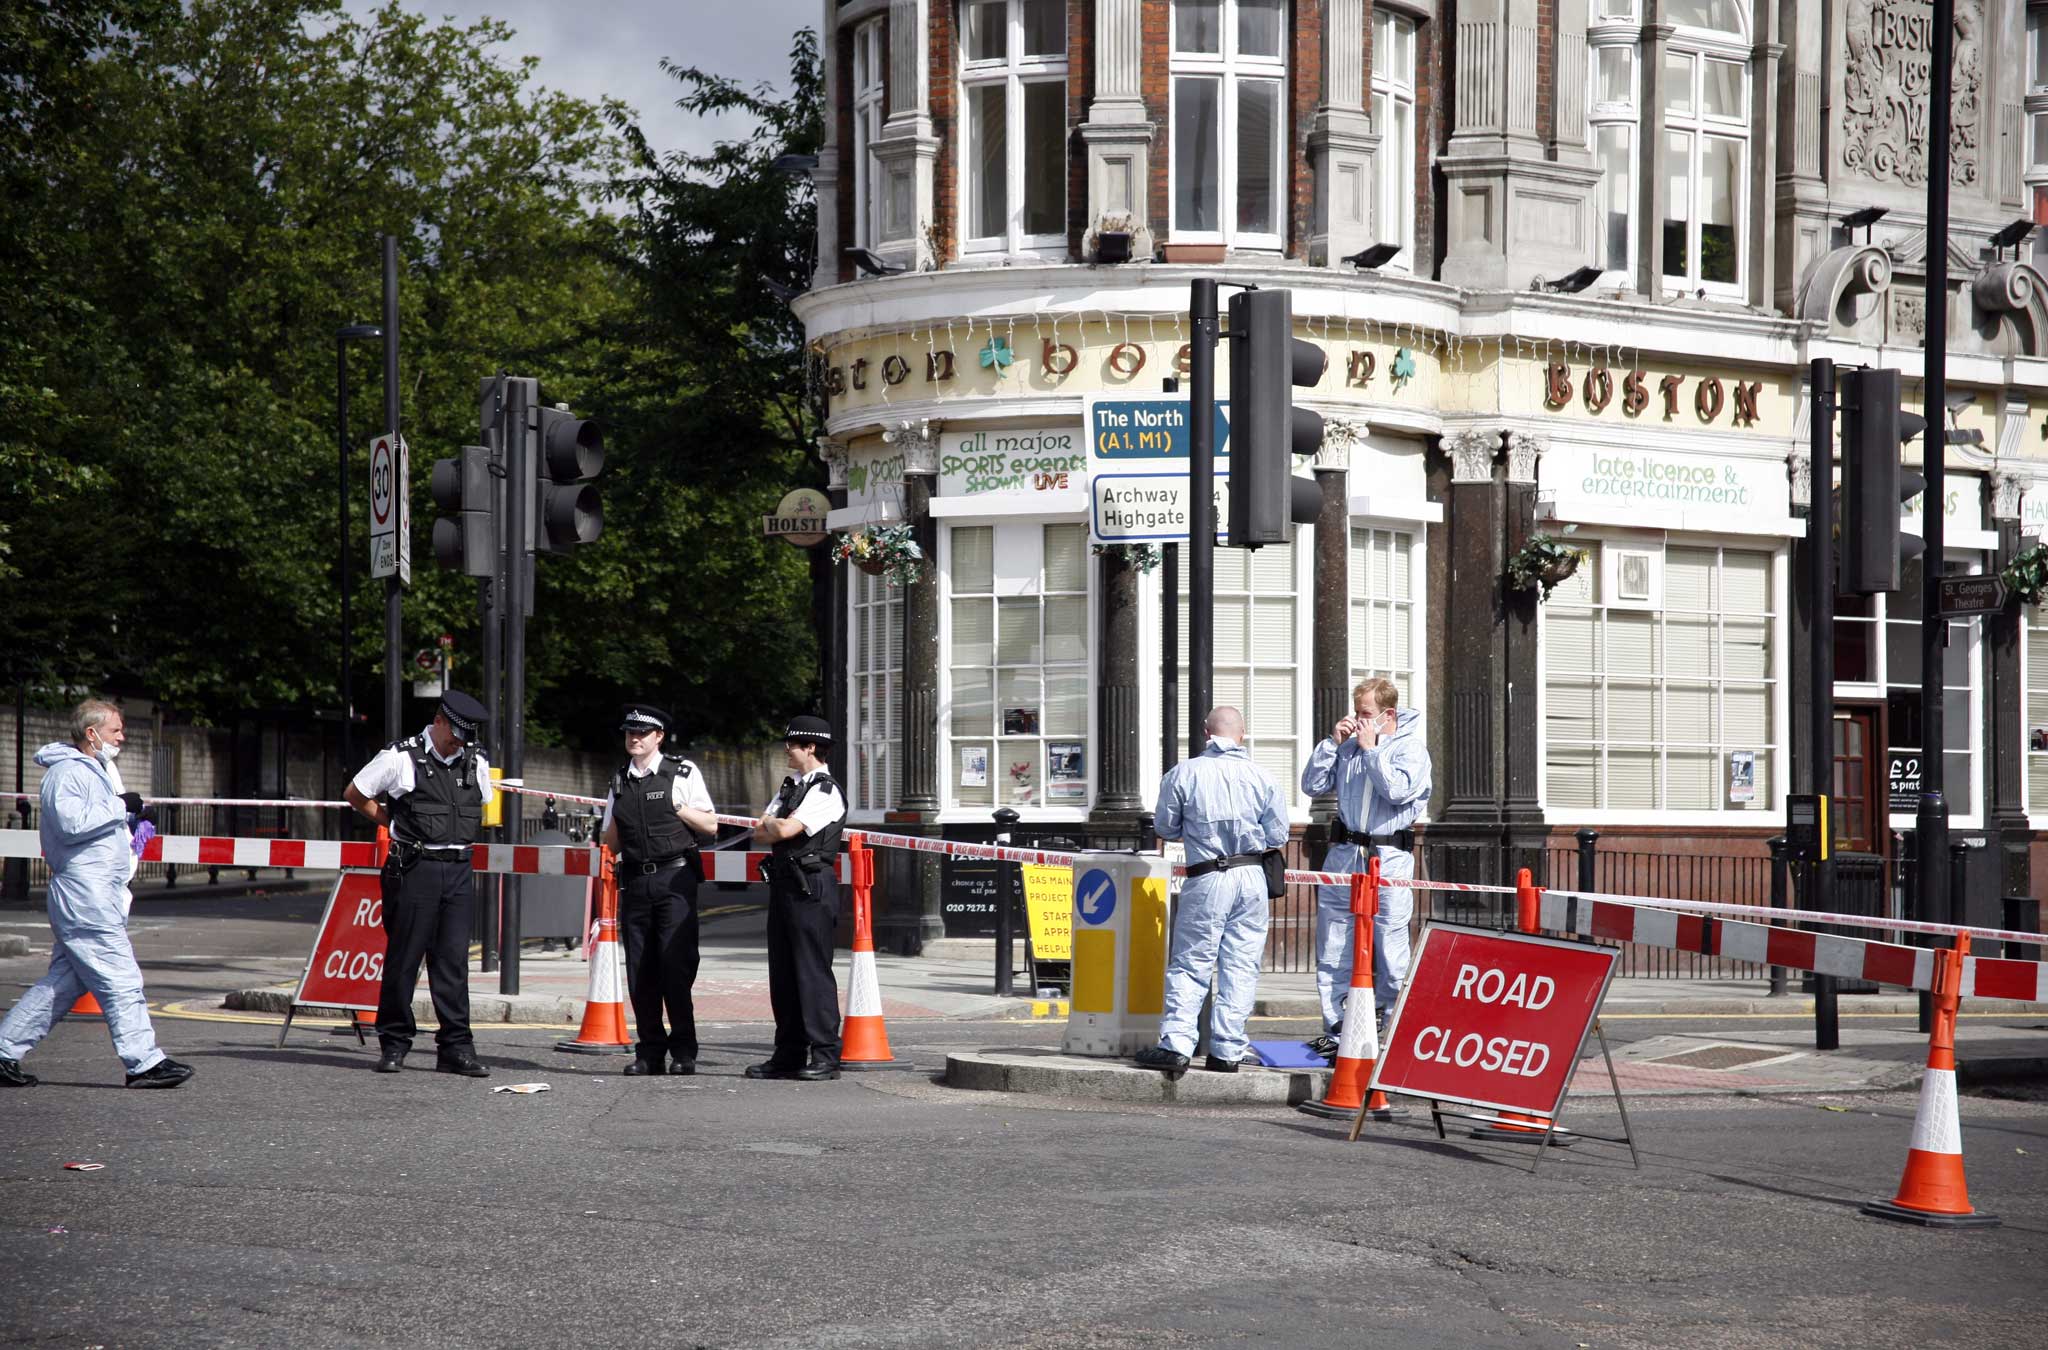 The scene of Elliot Guy's murder in London's Tufnell Park in 2008